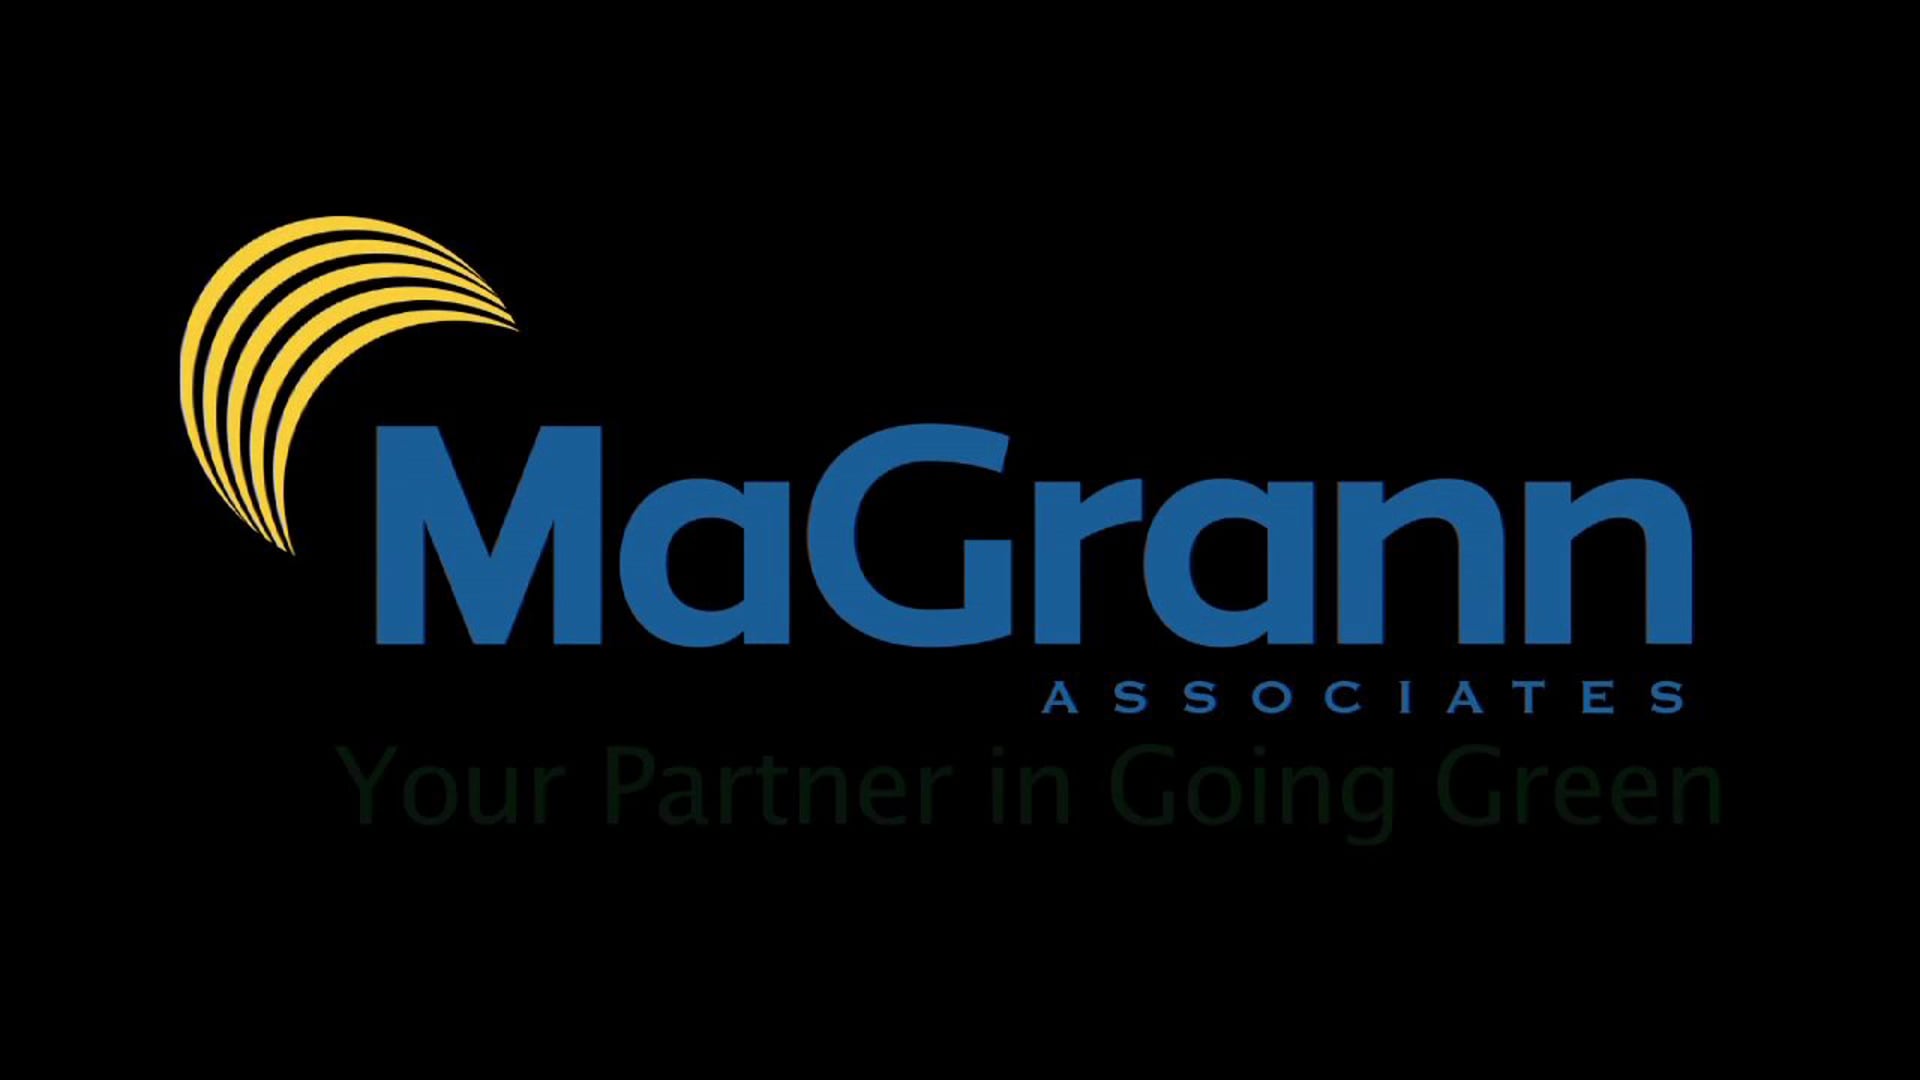 MaGrann Associates: Your Partner in Going Green